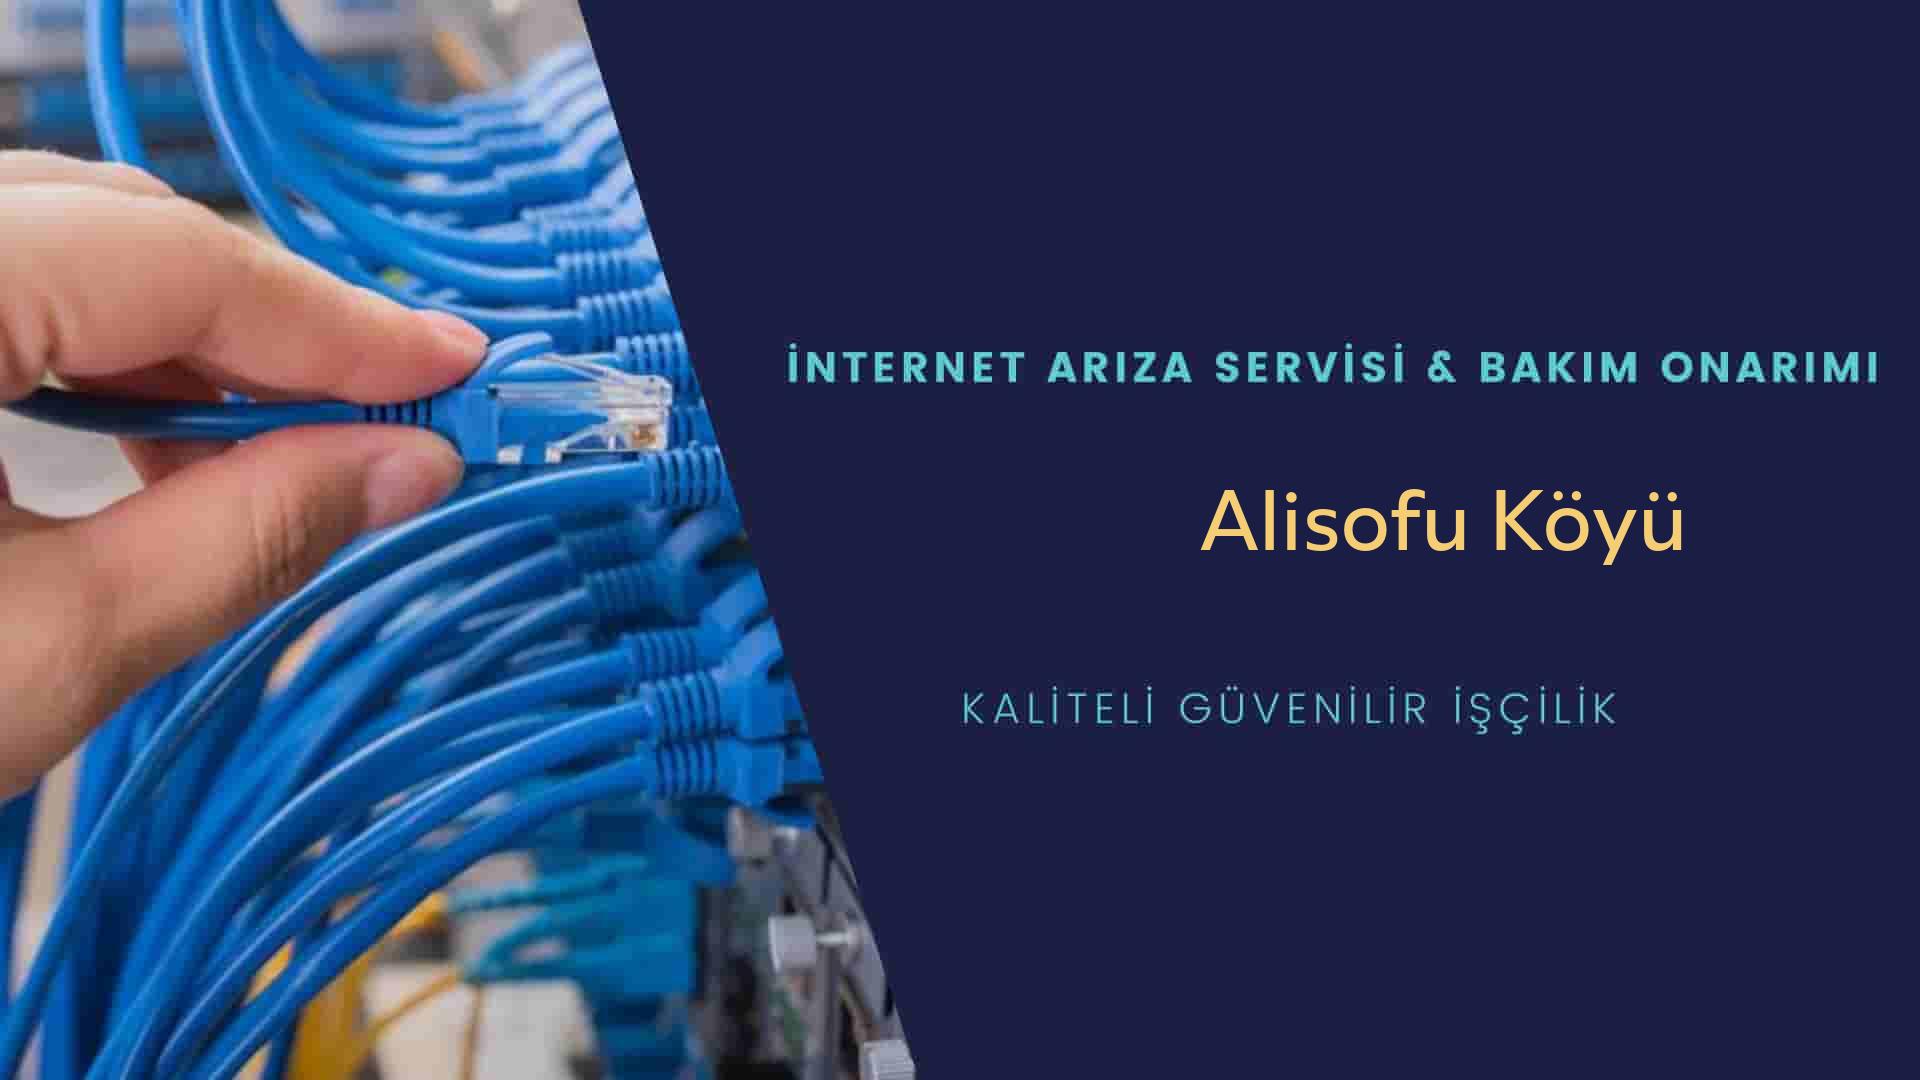 Alisofu Köyü internet kablosu çekimi yapan yerler veya elektrikçiler mi? arıyorsunuz doğru yerdesiniz o zaman sizlere 7/24 yardımcı olacak profesyonel ustalarımız bir telefon kadar yakındır size.